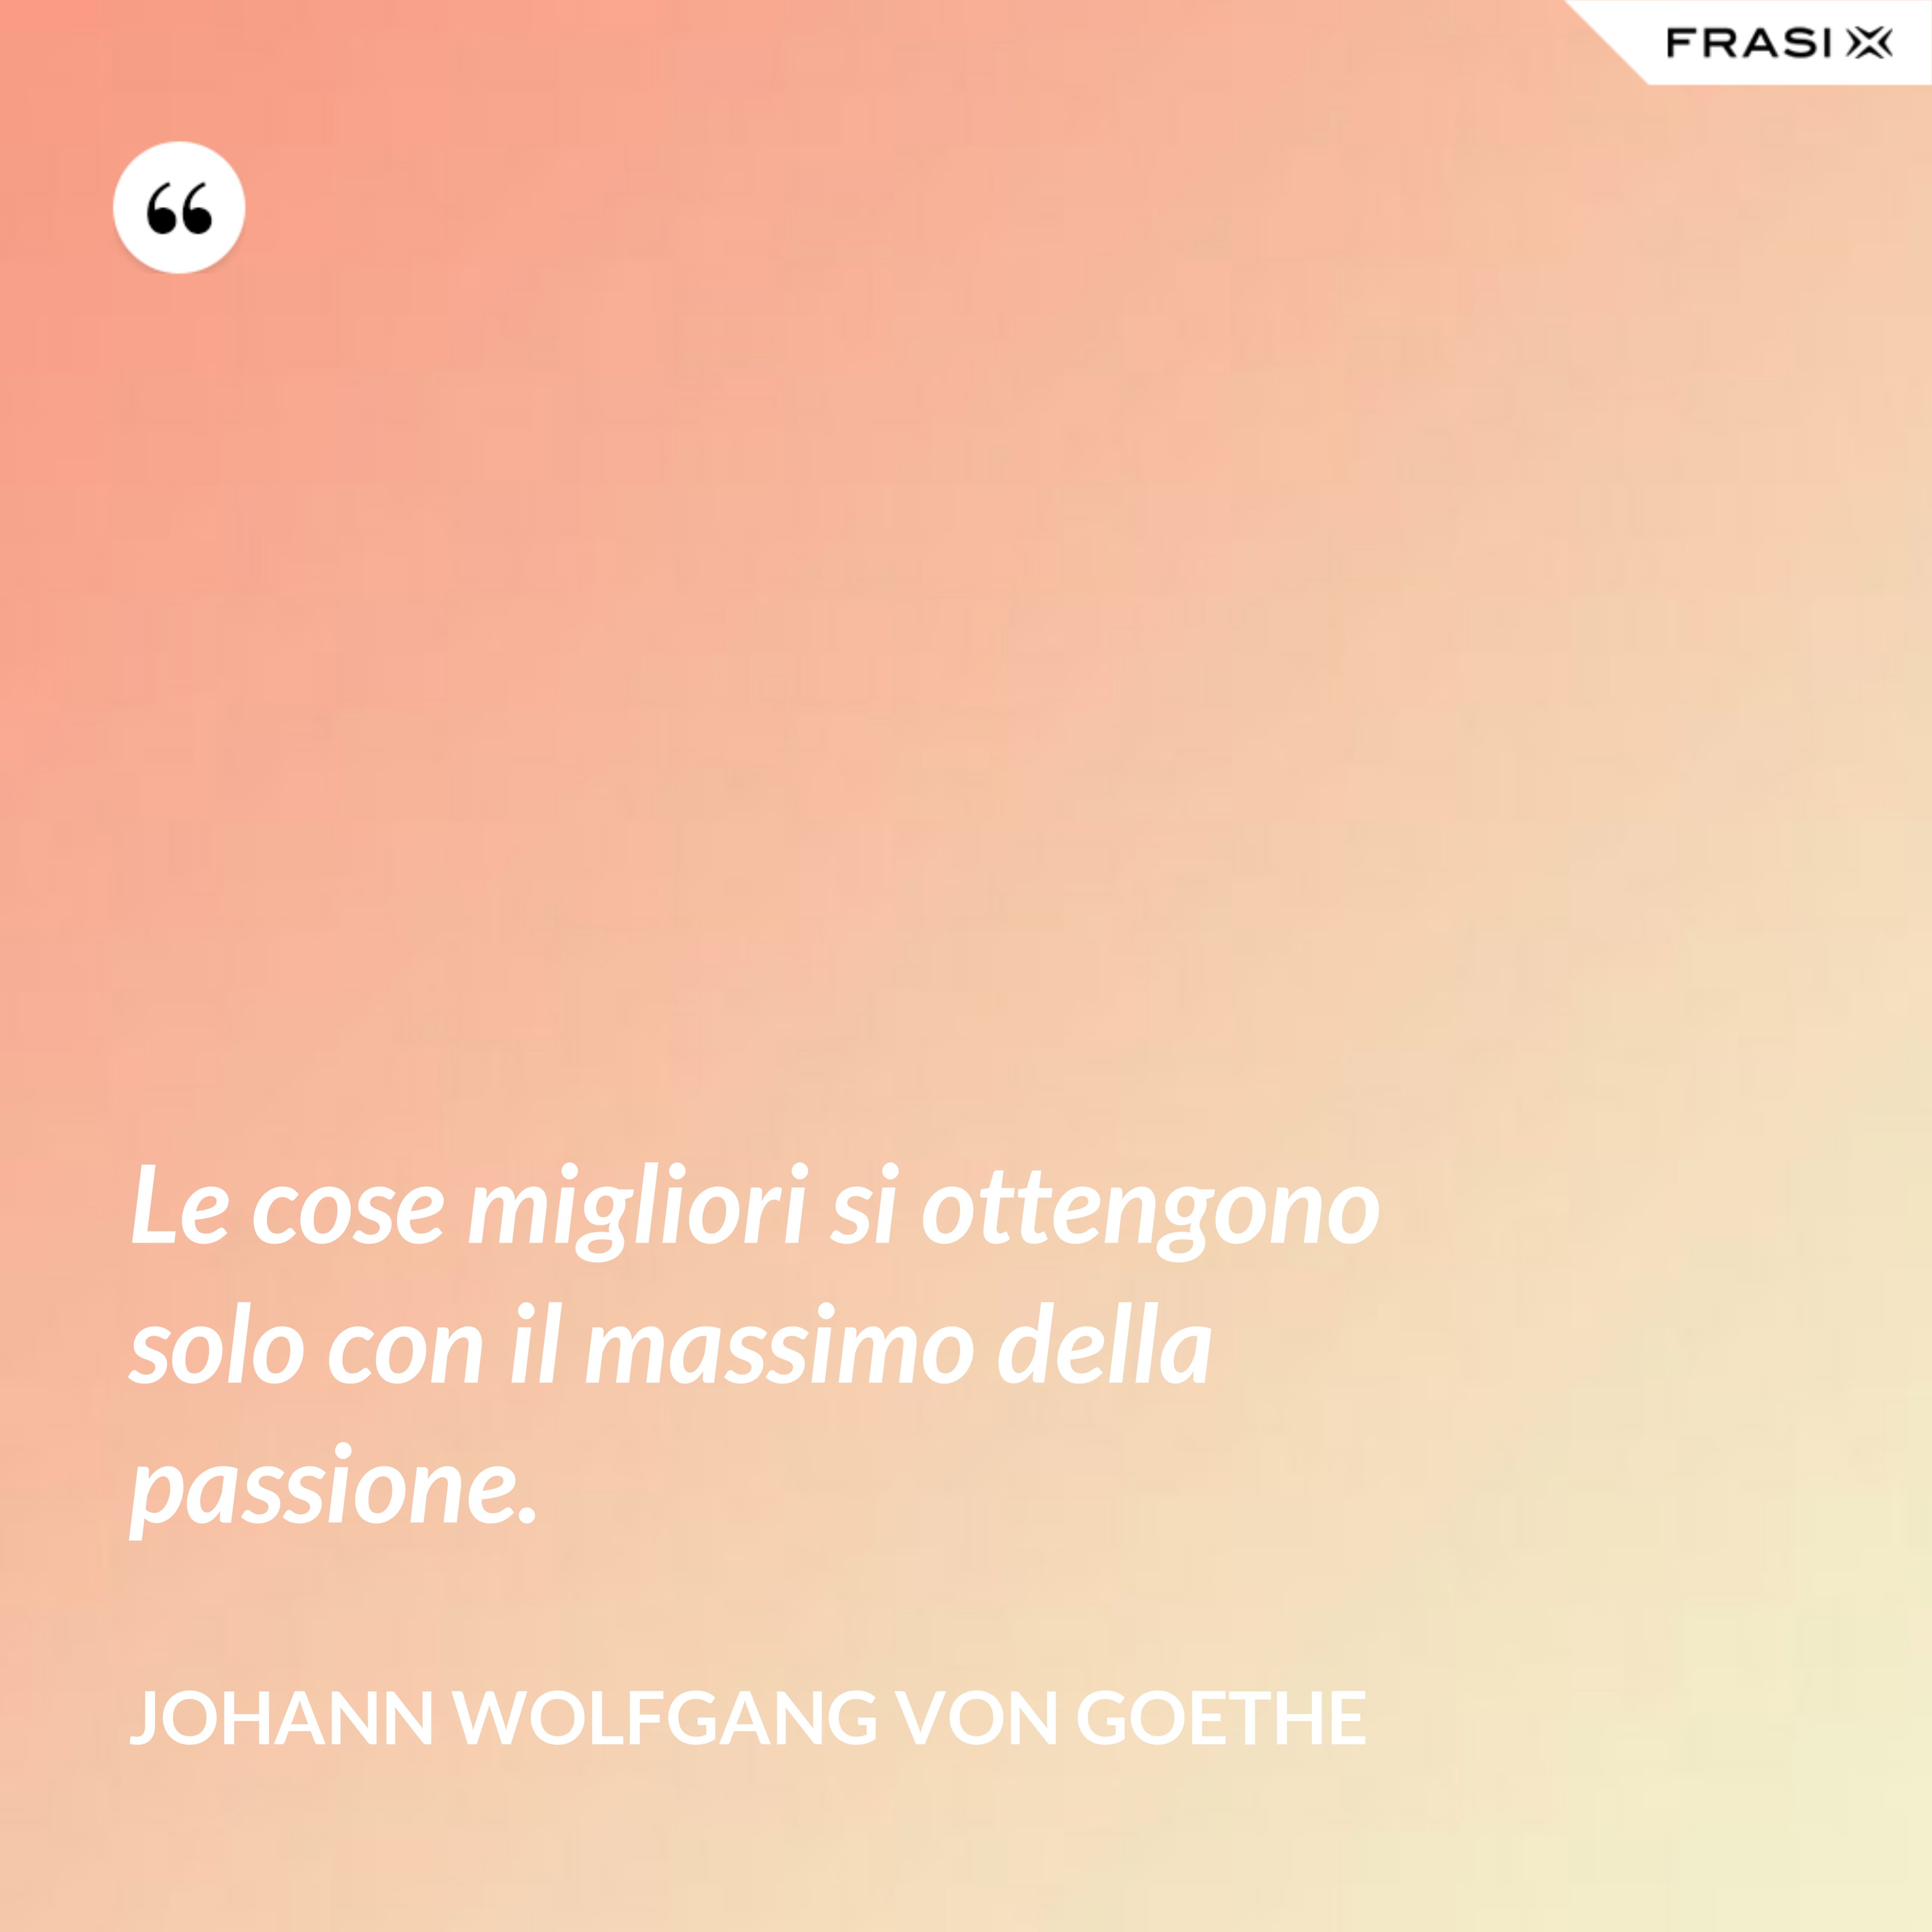 Le cose migliori si ottengono solo con il massimo della passione. - Johann Wolfgang von Goethe